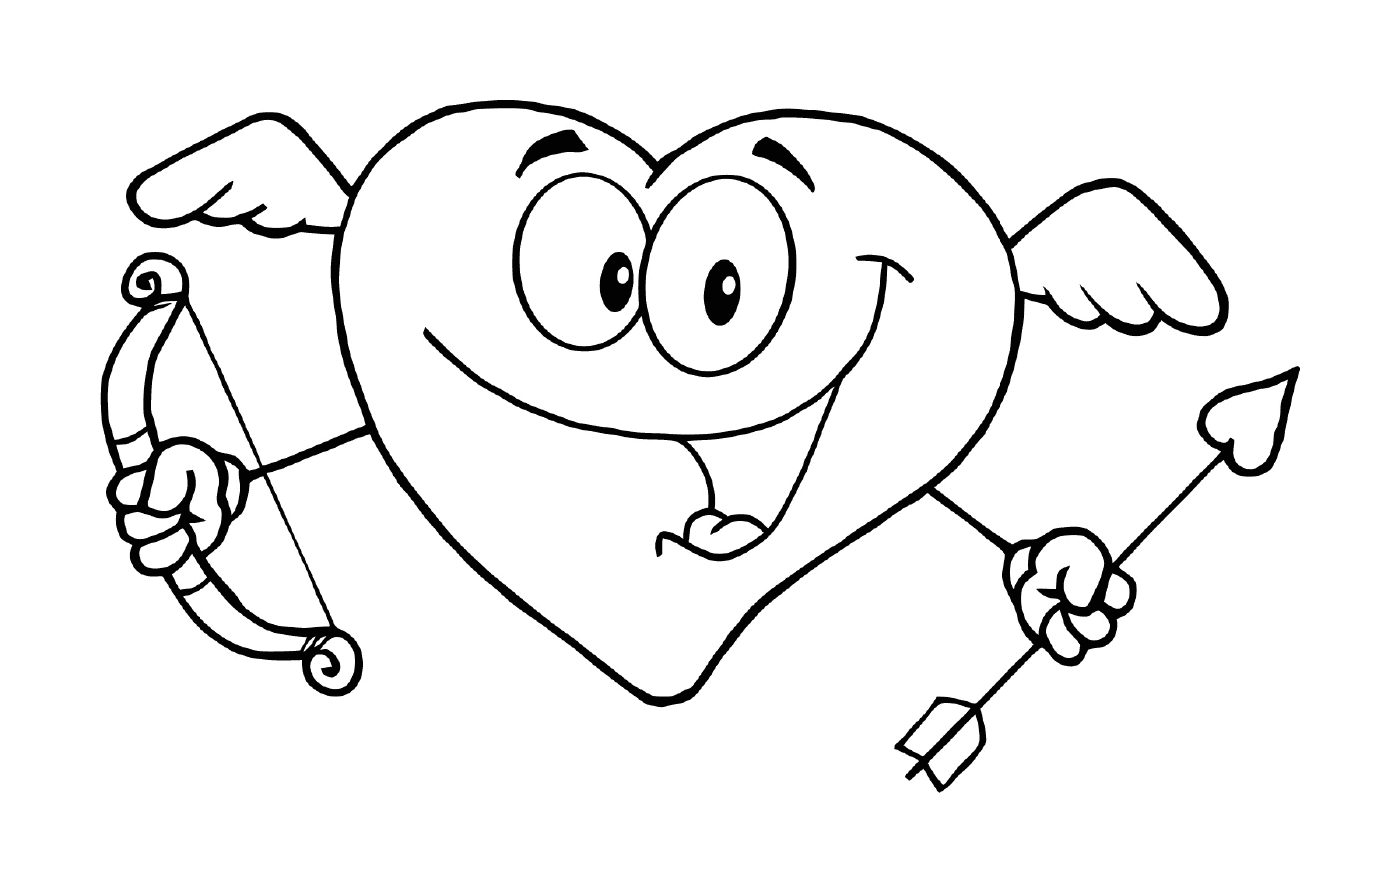  Una caricatura con un corazón sonriente 